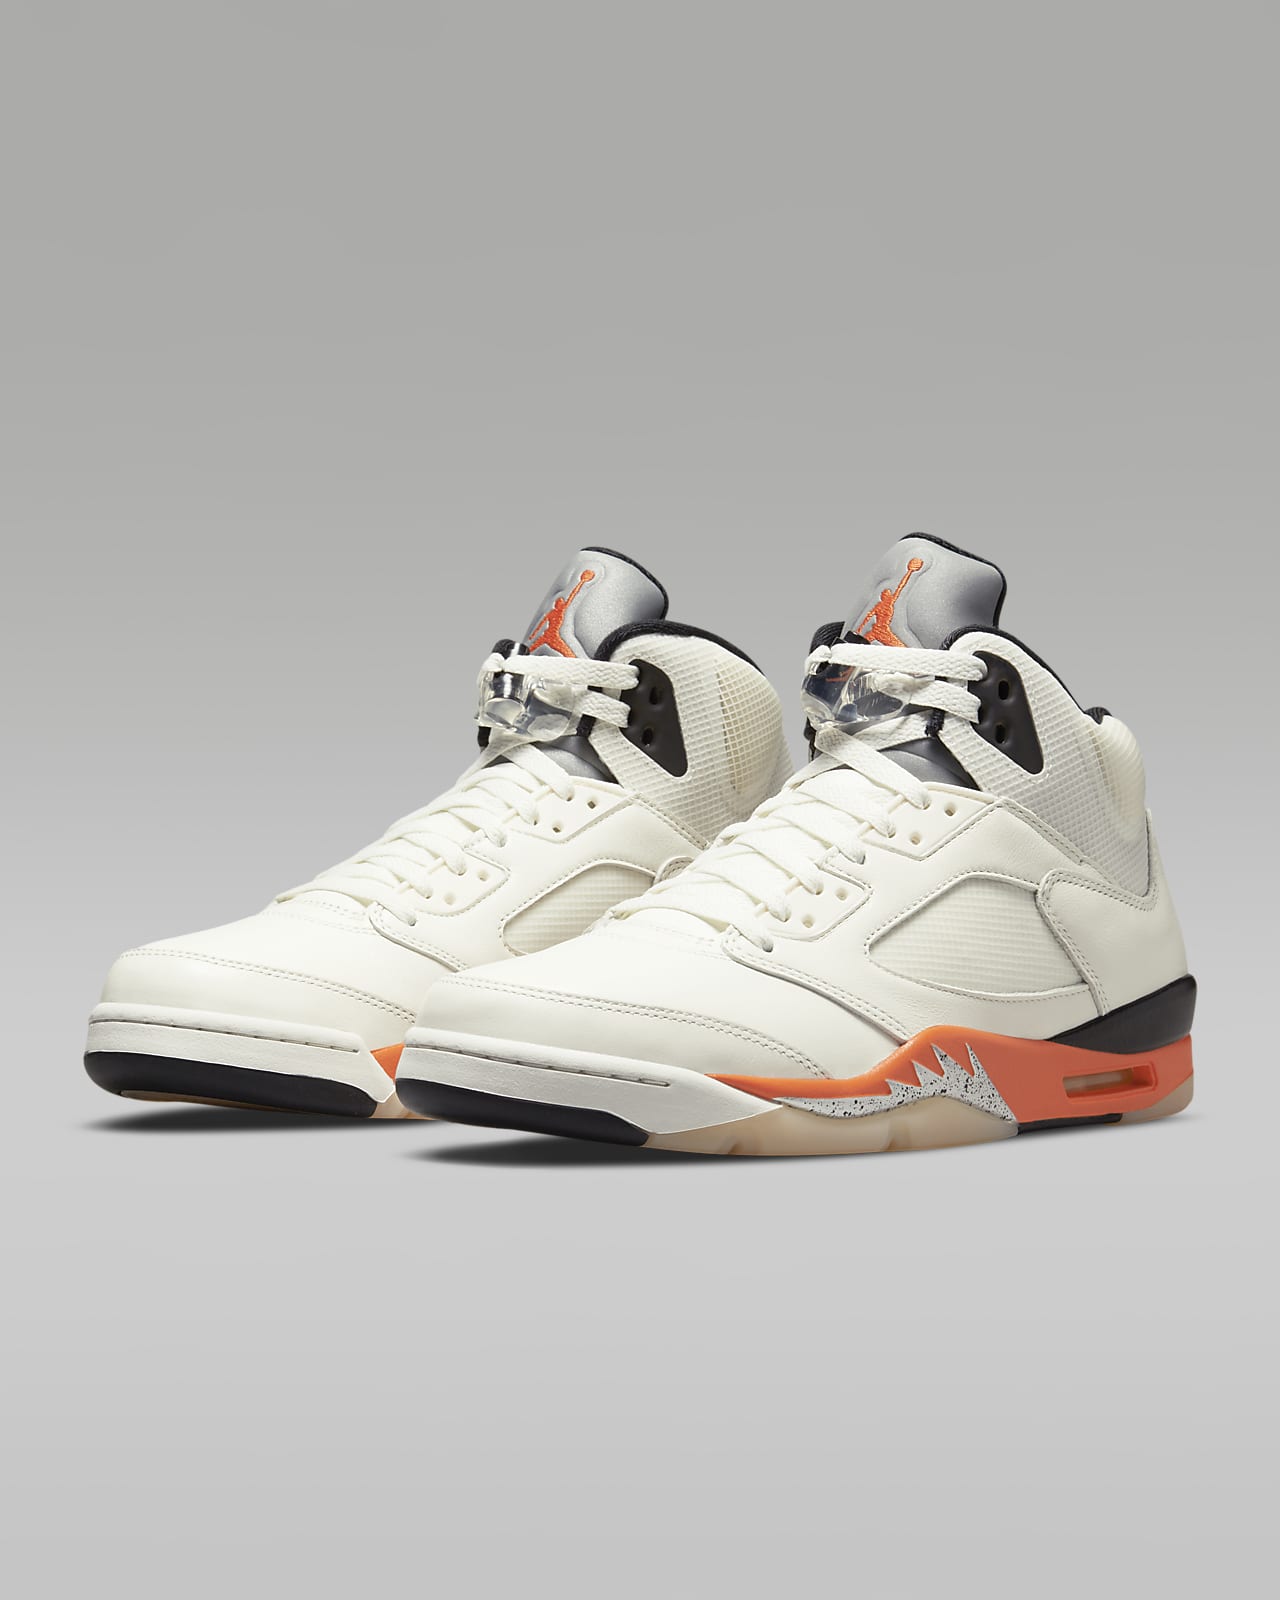 Air Jordan 5 Retro 鞋款。Nike TW